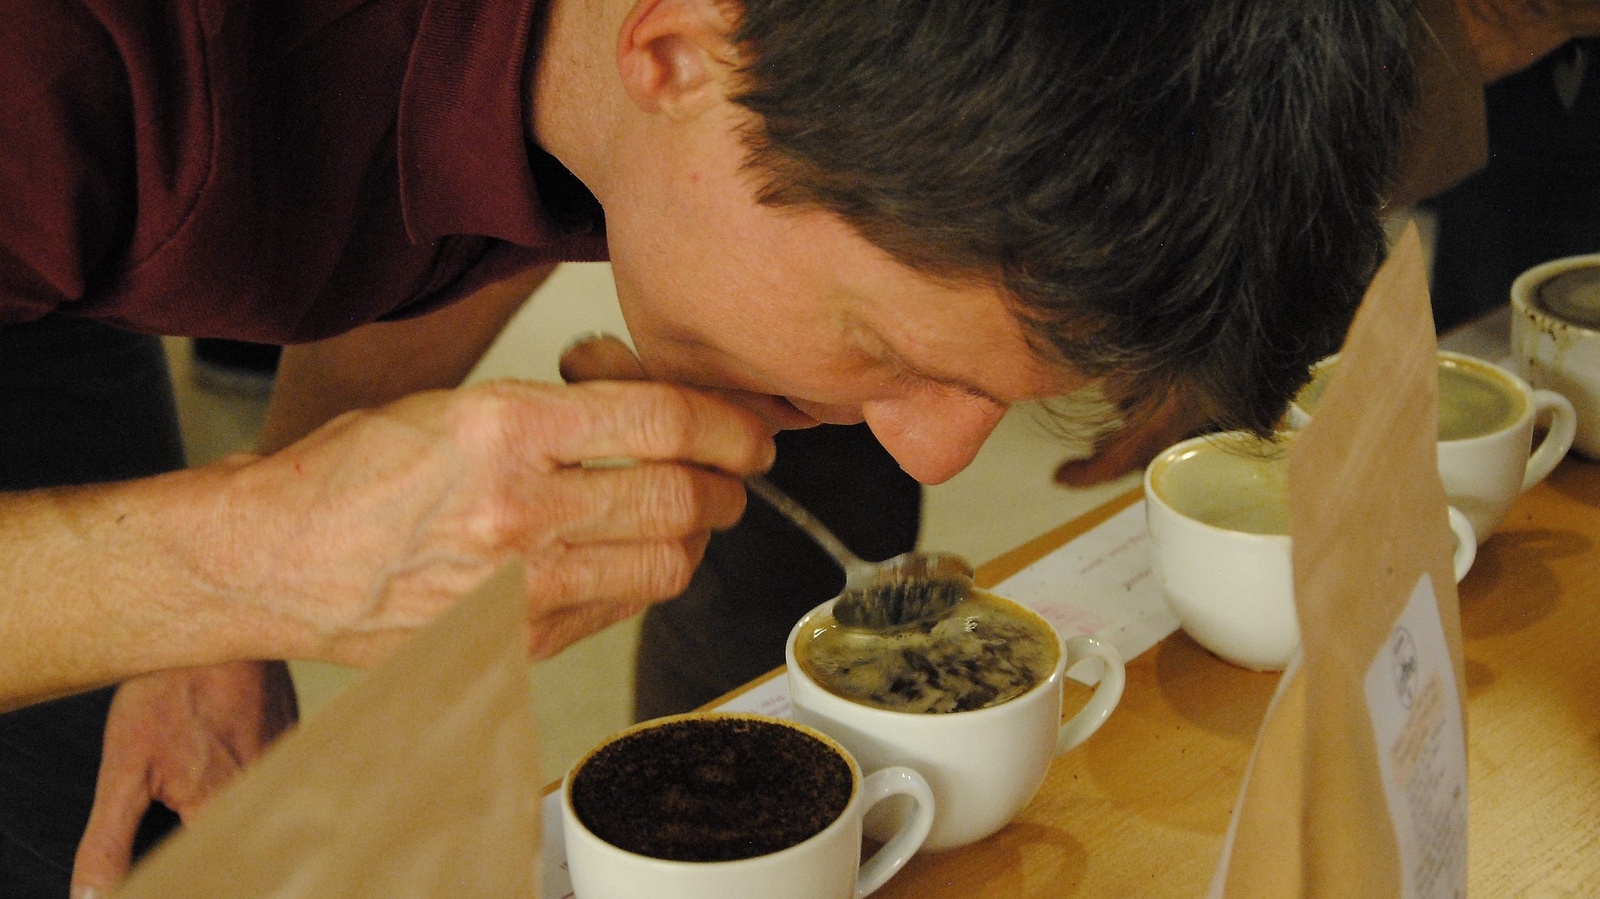 Henrik Arvidsson skummar kaffet före provning. FOTO: SUSANNE GÄRE